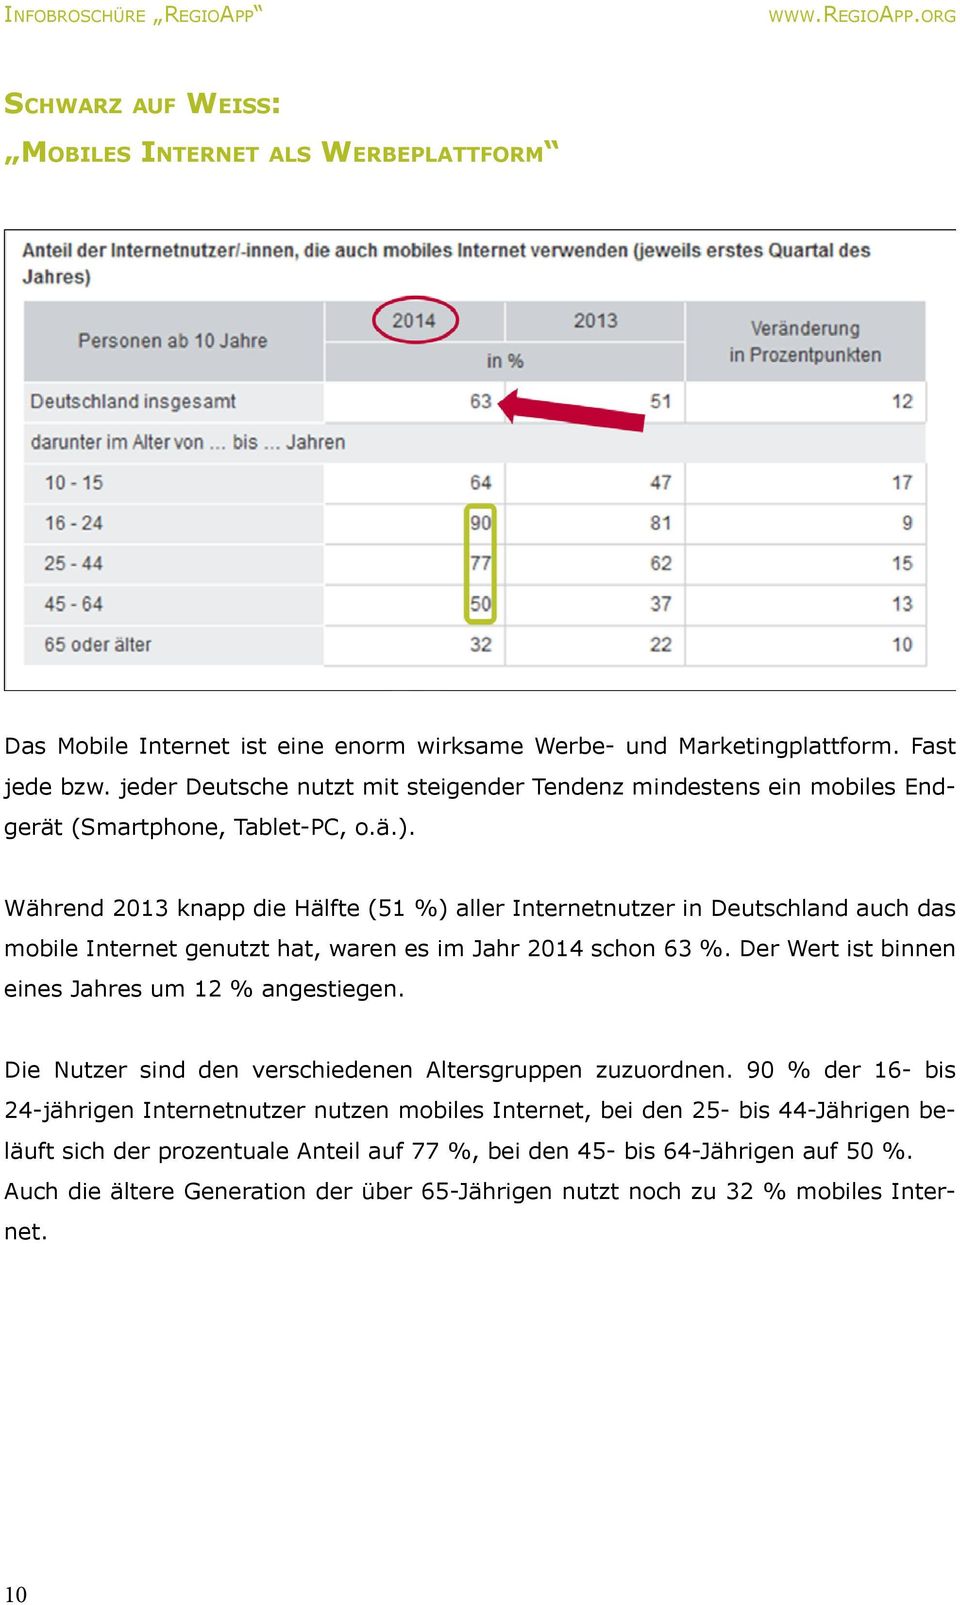 Während 2013 knapp die Hälfte (51 %) aller Internetnutzer in Deutschland auch das mobile Internet genutzt hat, waren es im Jahr 2014 schon 63 %. Der Wert ist binnen eines Jahres um 12 % angestiegen.